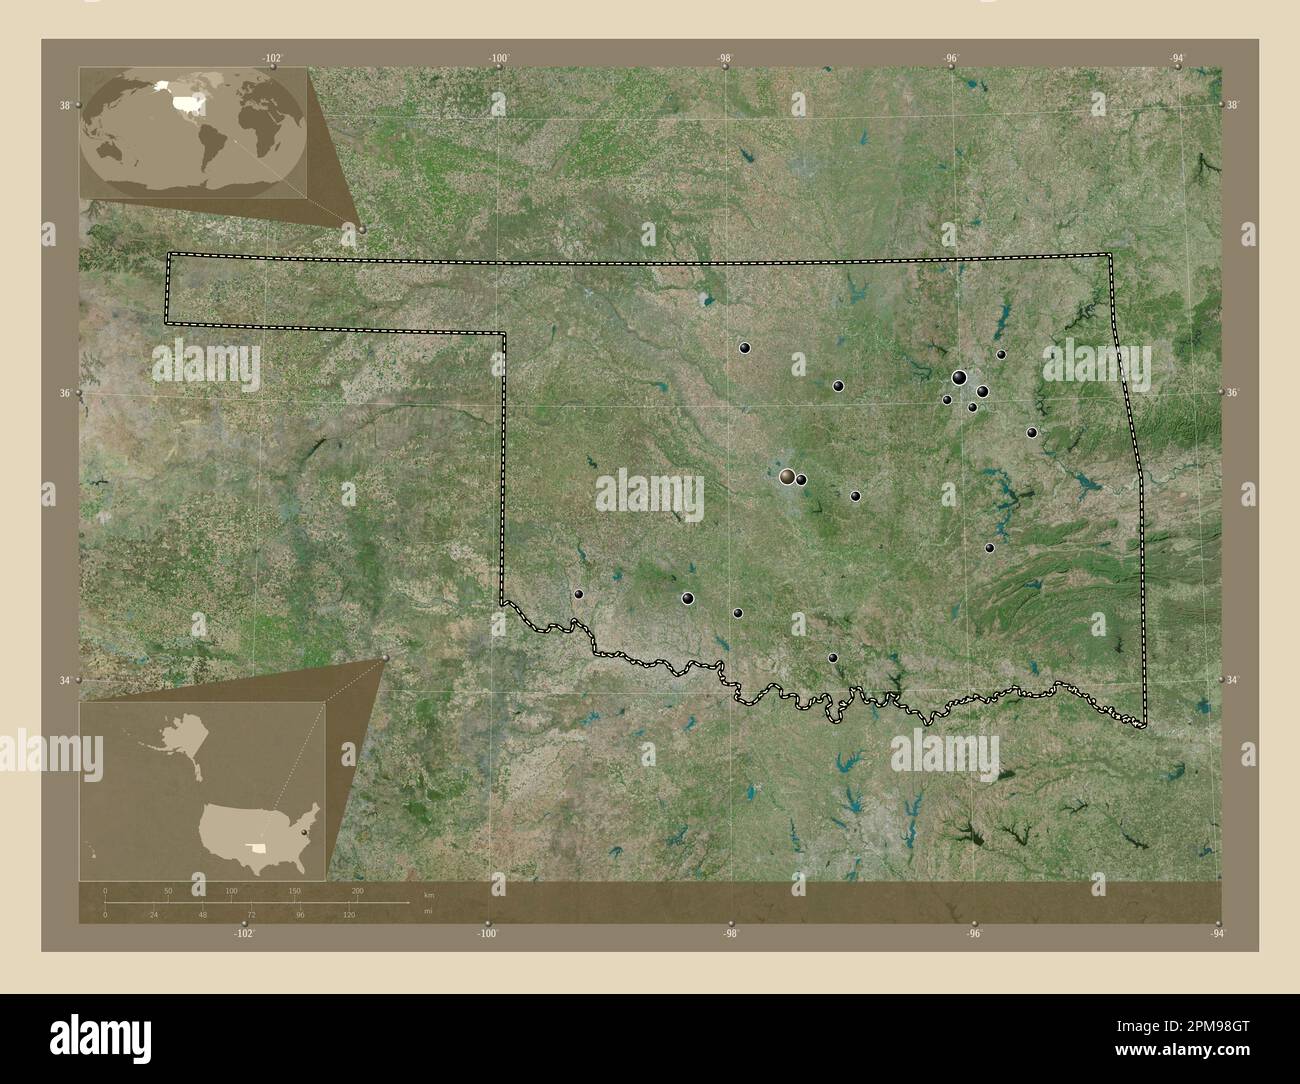 Oklahoma, stato degli Stati Uniti d'America. Mappa satellitare ad alta risoluzione. Posizioni delle principali città della regione. Mappe delle posizioni ausiliarie degli angoli Foto Stock